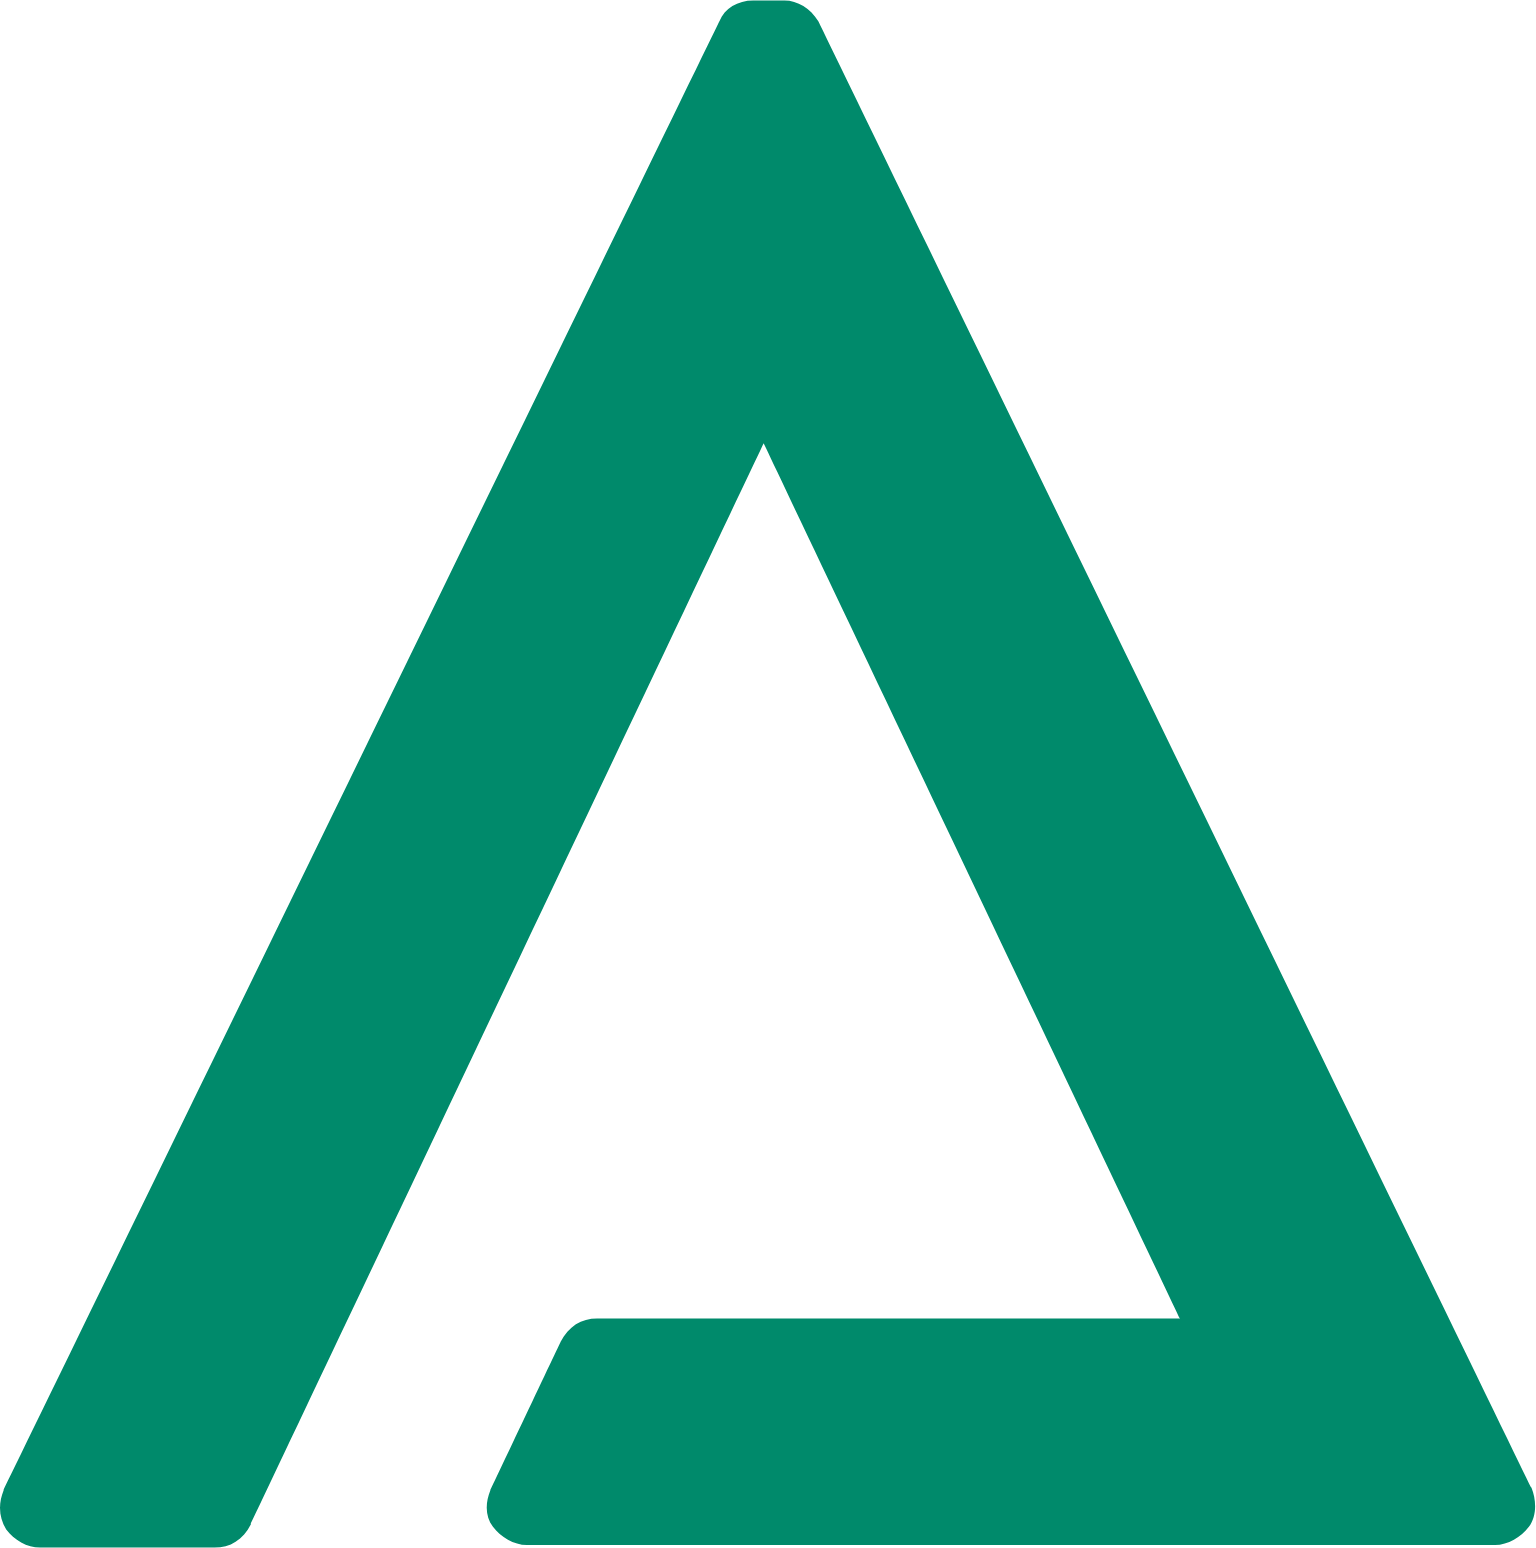 Alumina Limited logo (PNG transparent)